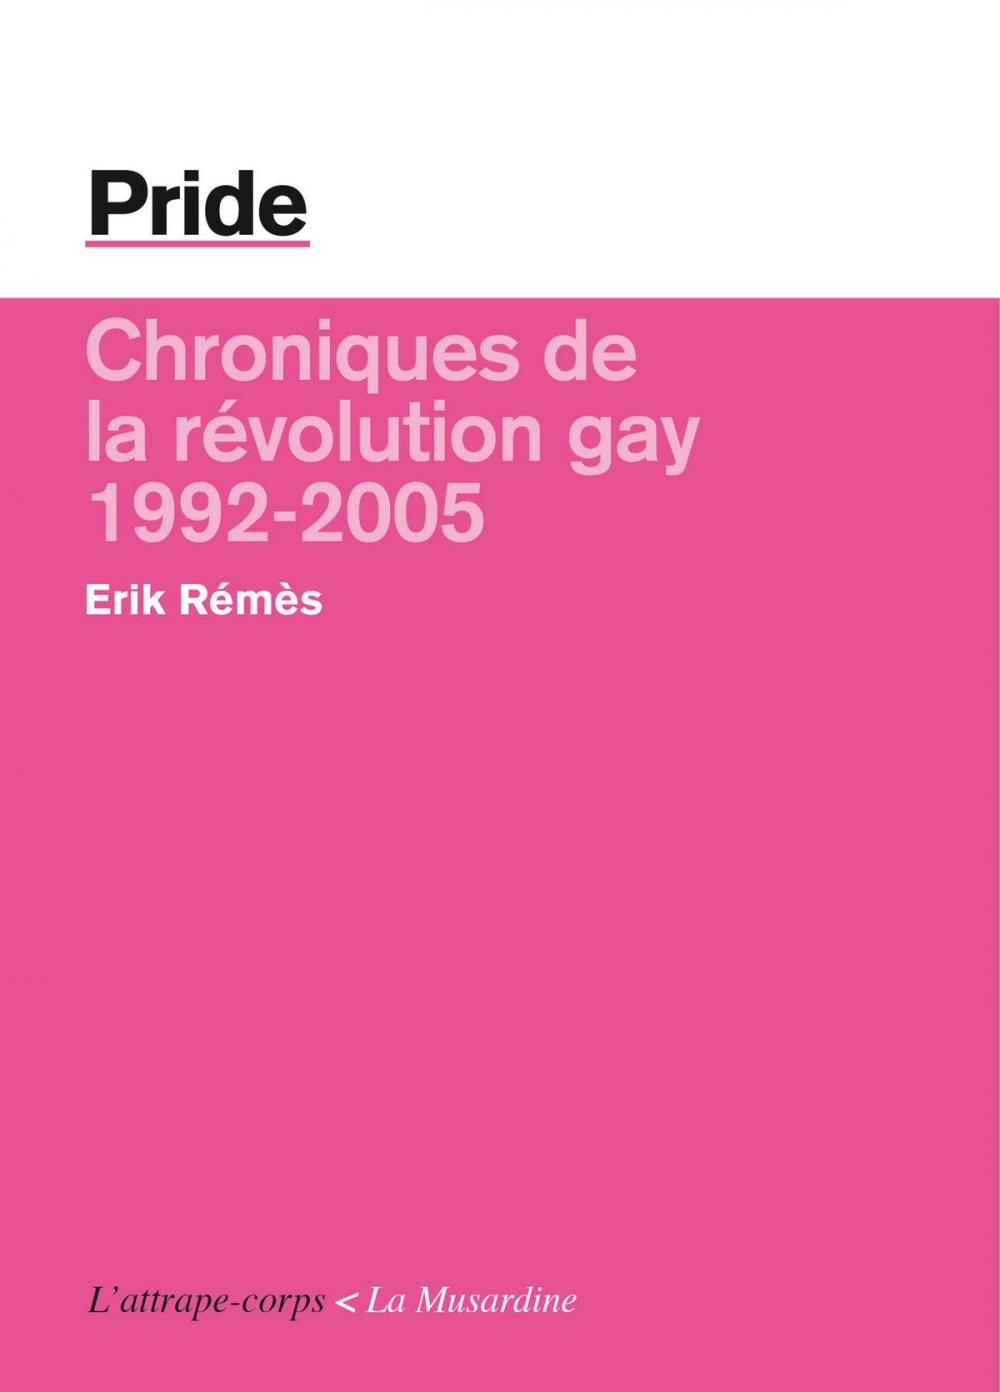 Big bigCover of Pride - La révolution gay (1992-2005)